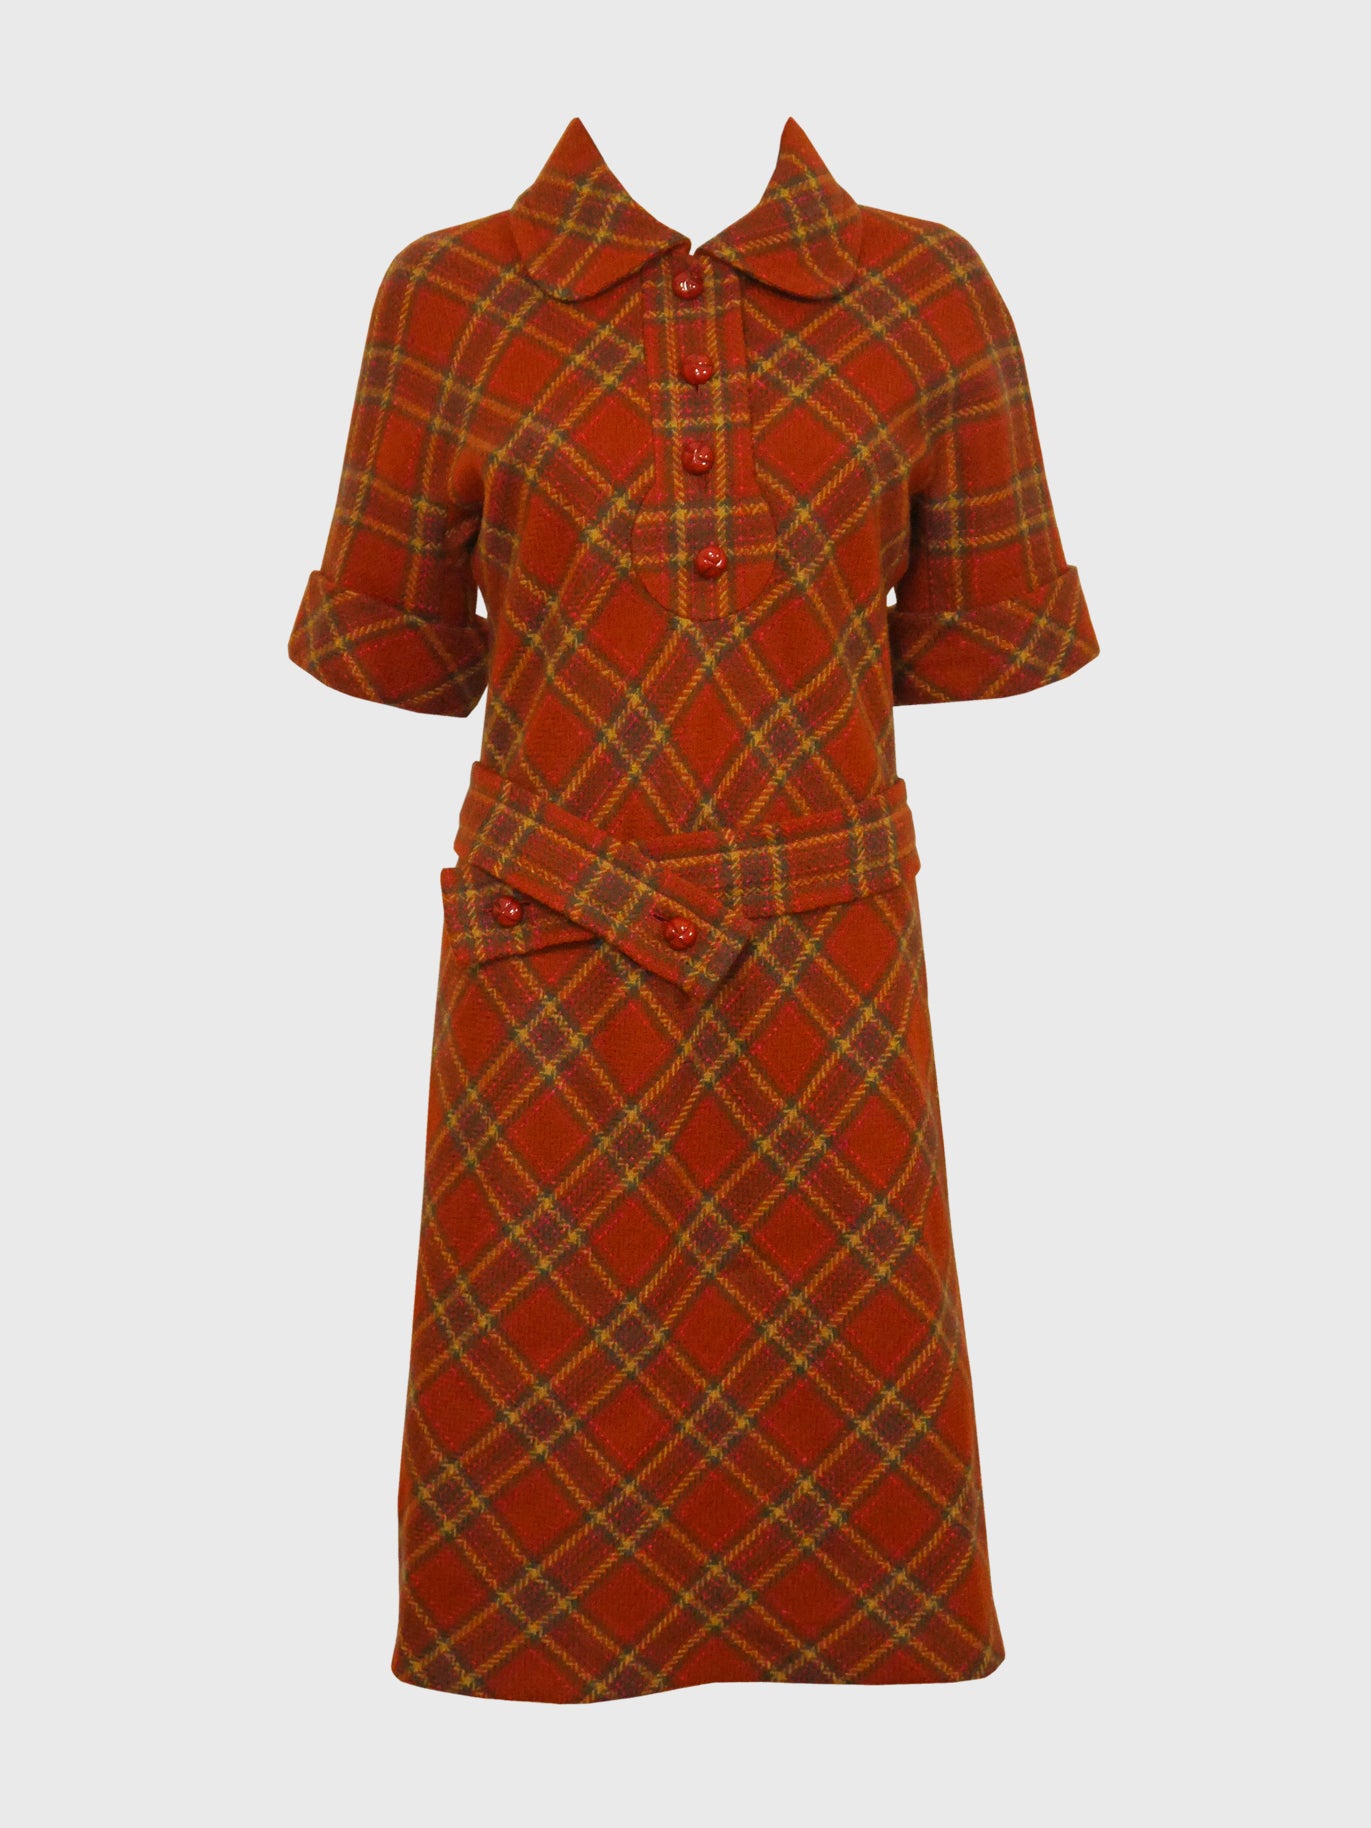 PIERRE CARDIN 1960s Vintage Wool Dress w/ Belt